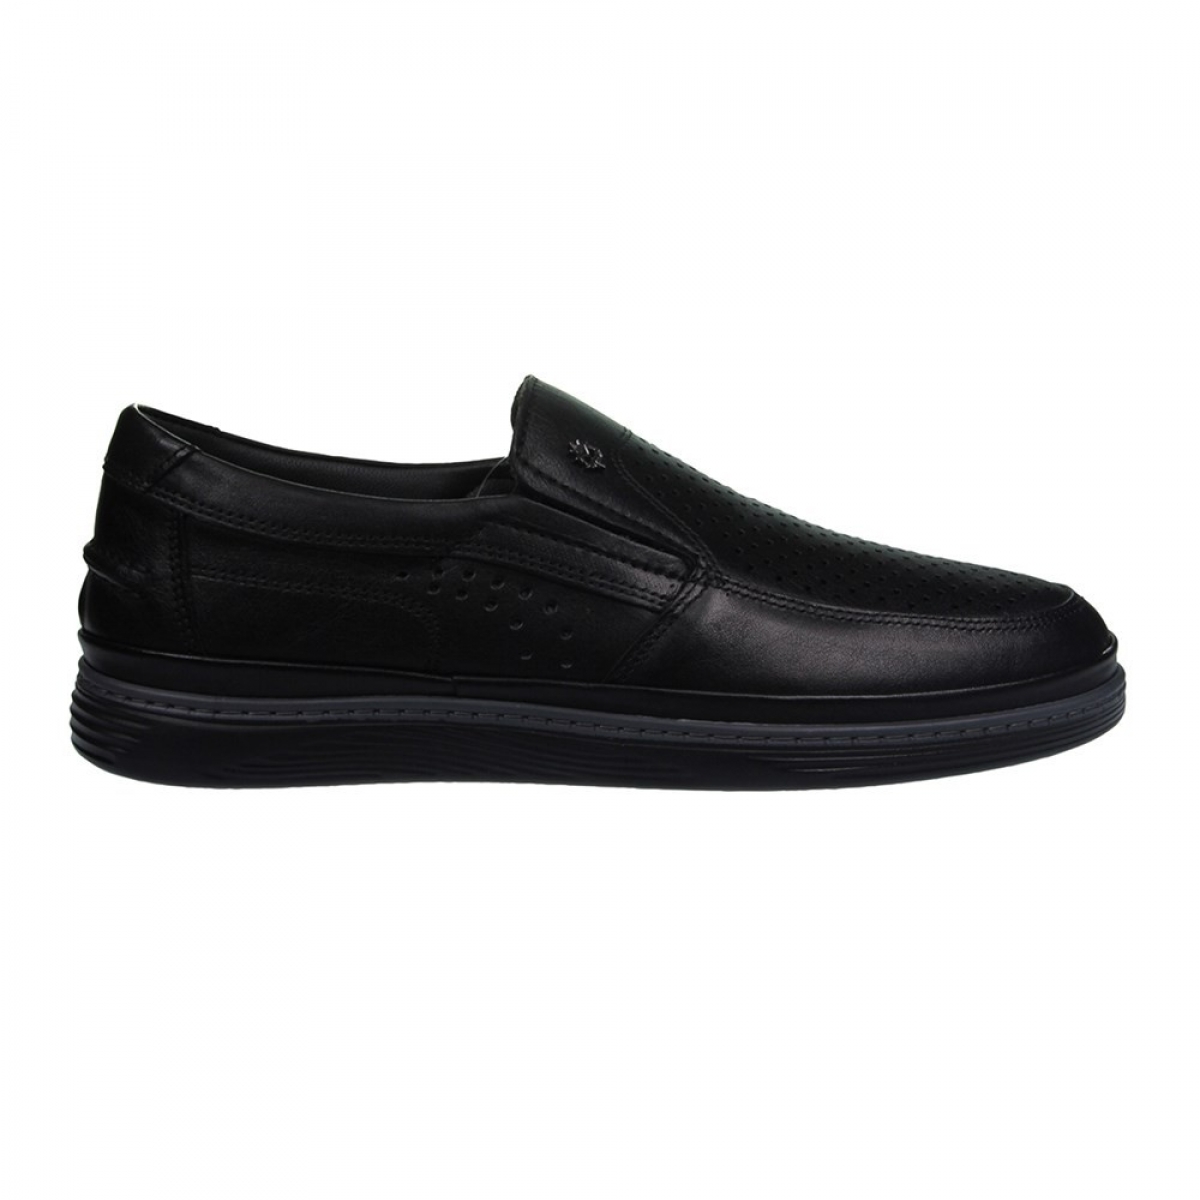 Flo Erkek Deri Siyah Casual Ayakkabı 211-4207MR 100. 1